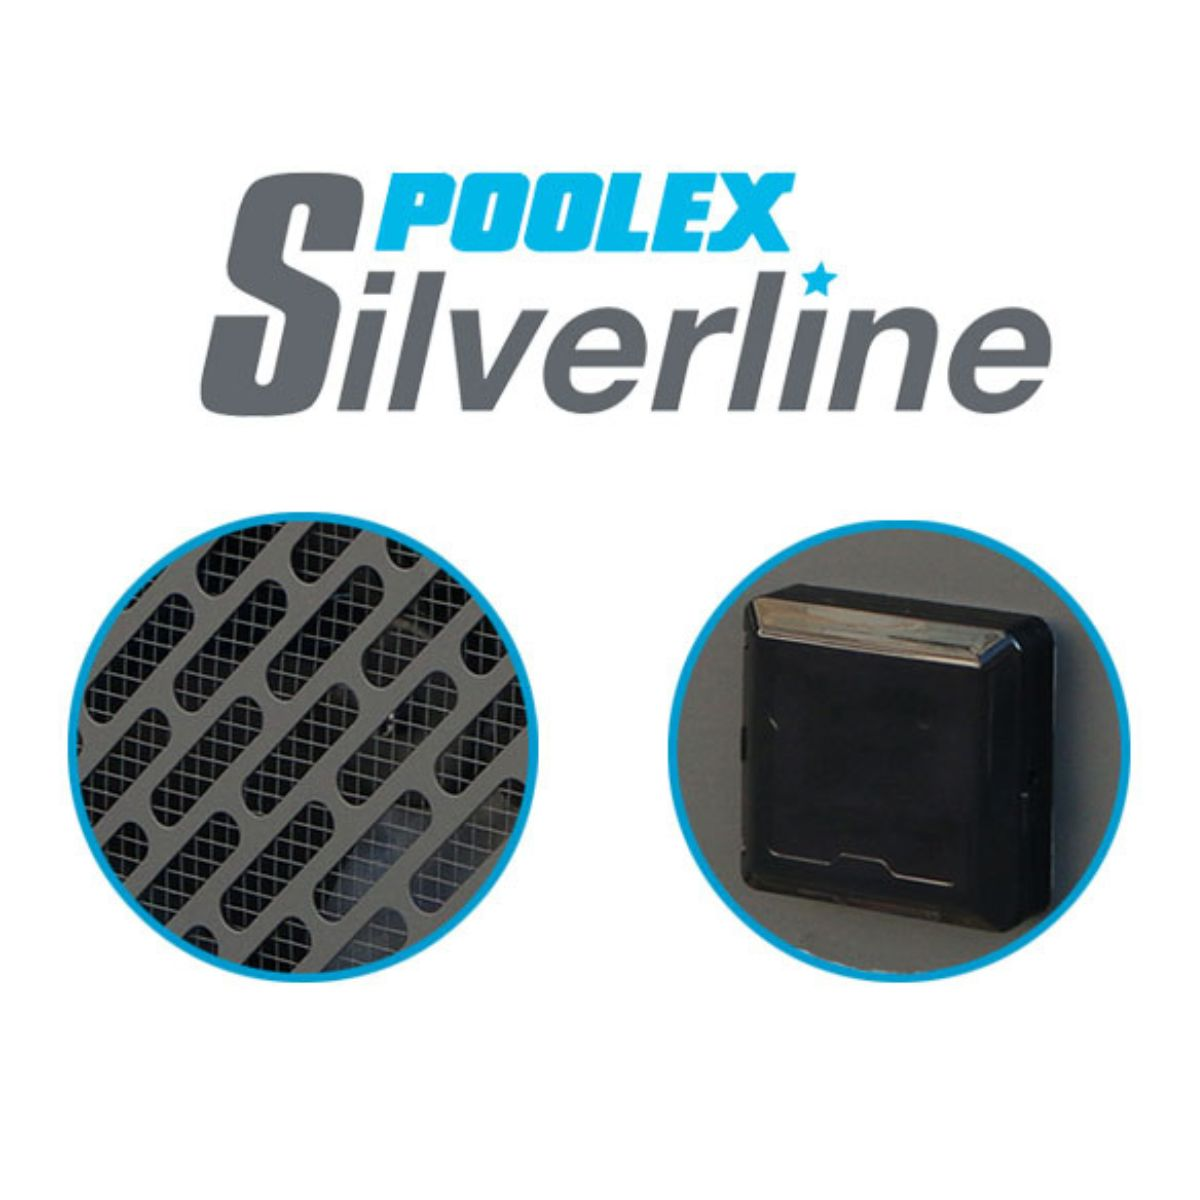 Schwimmbadpumpe Silverline 55 POOLEX